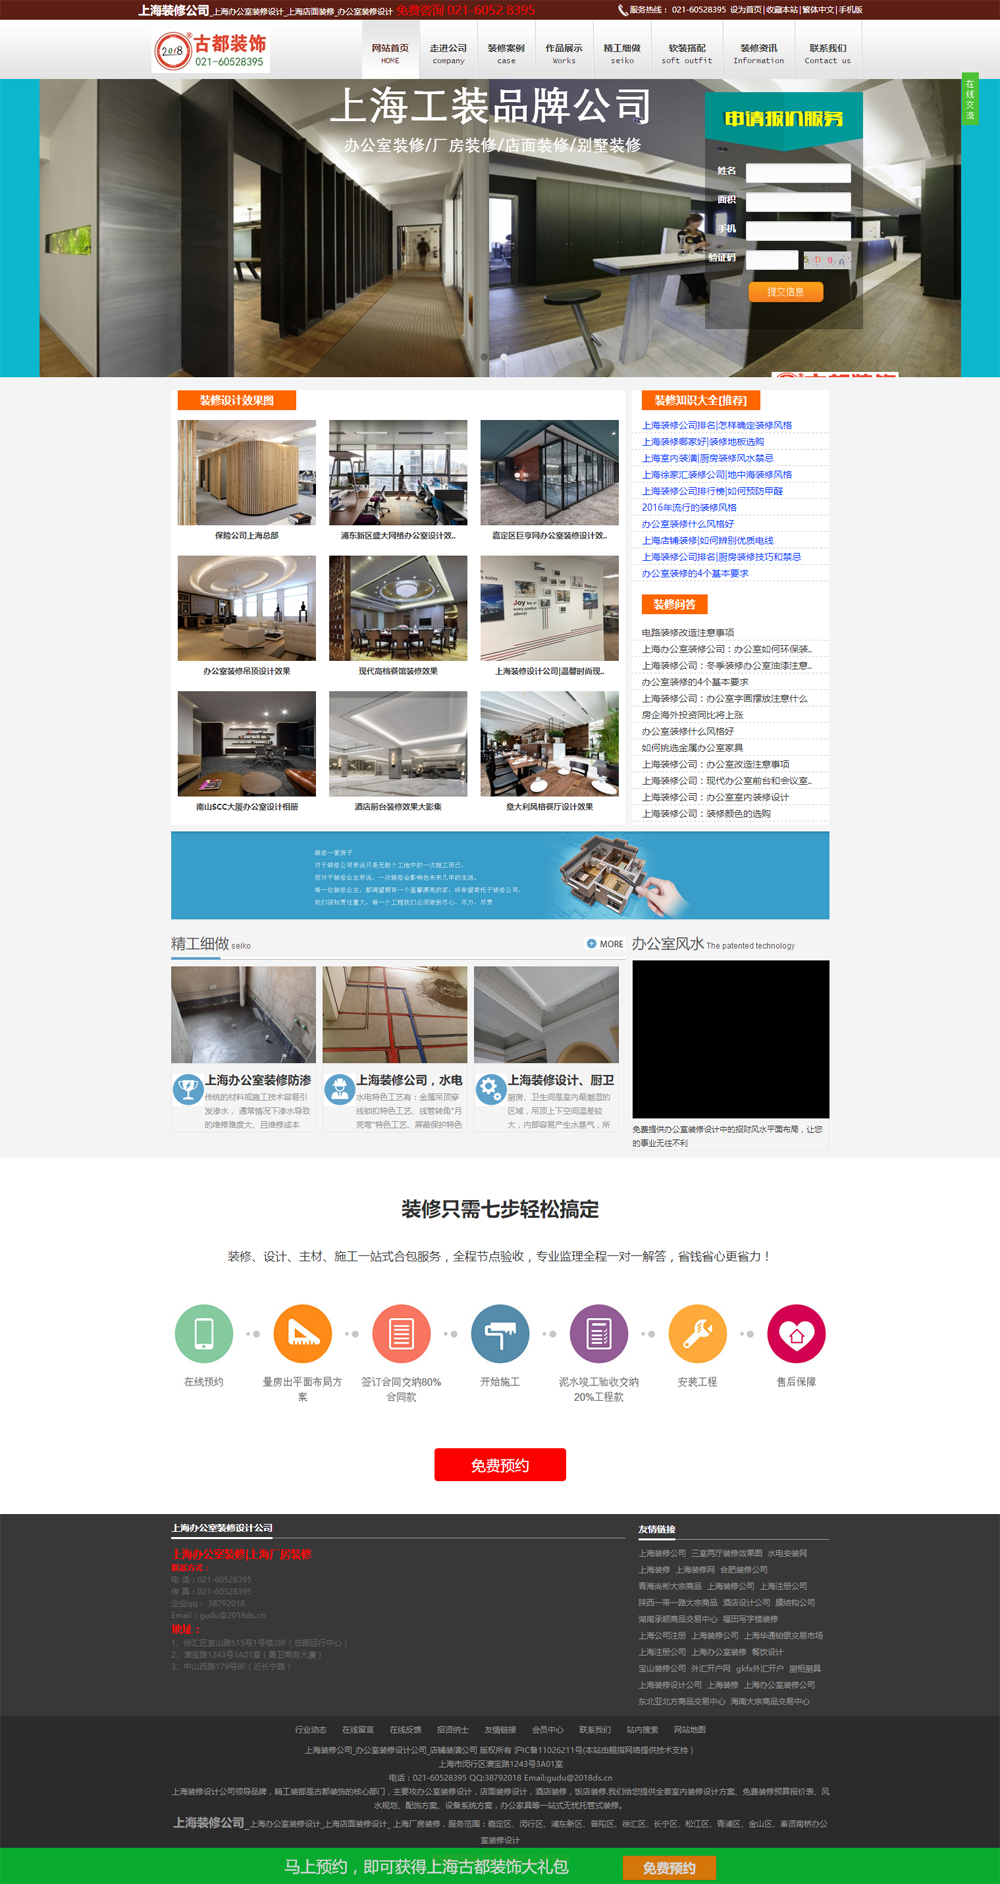 【营销型网站】上海古都装饰设计有限公司【装修营销网站之一】(图1)